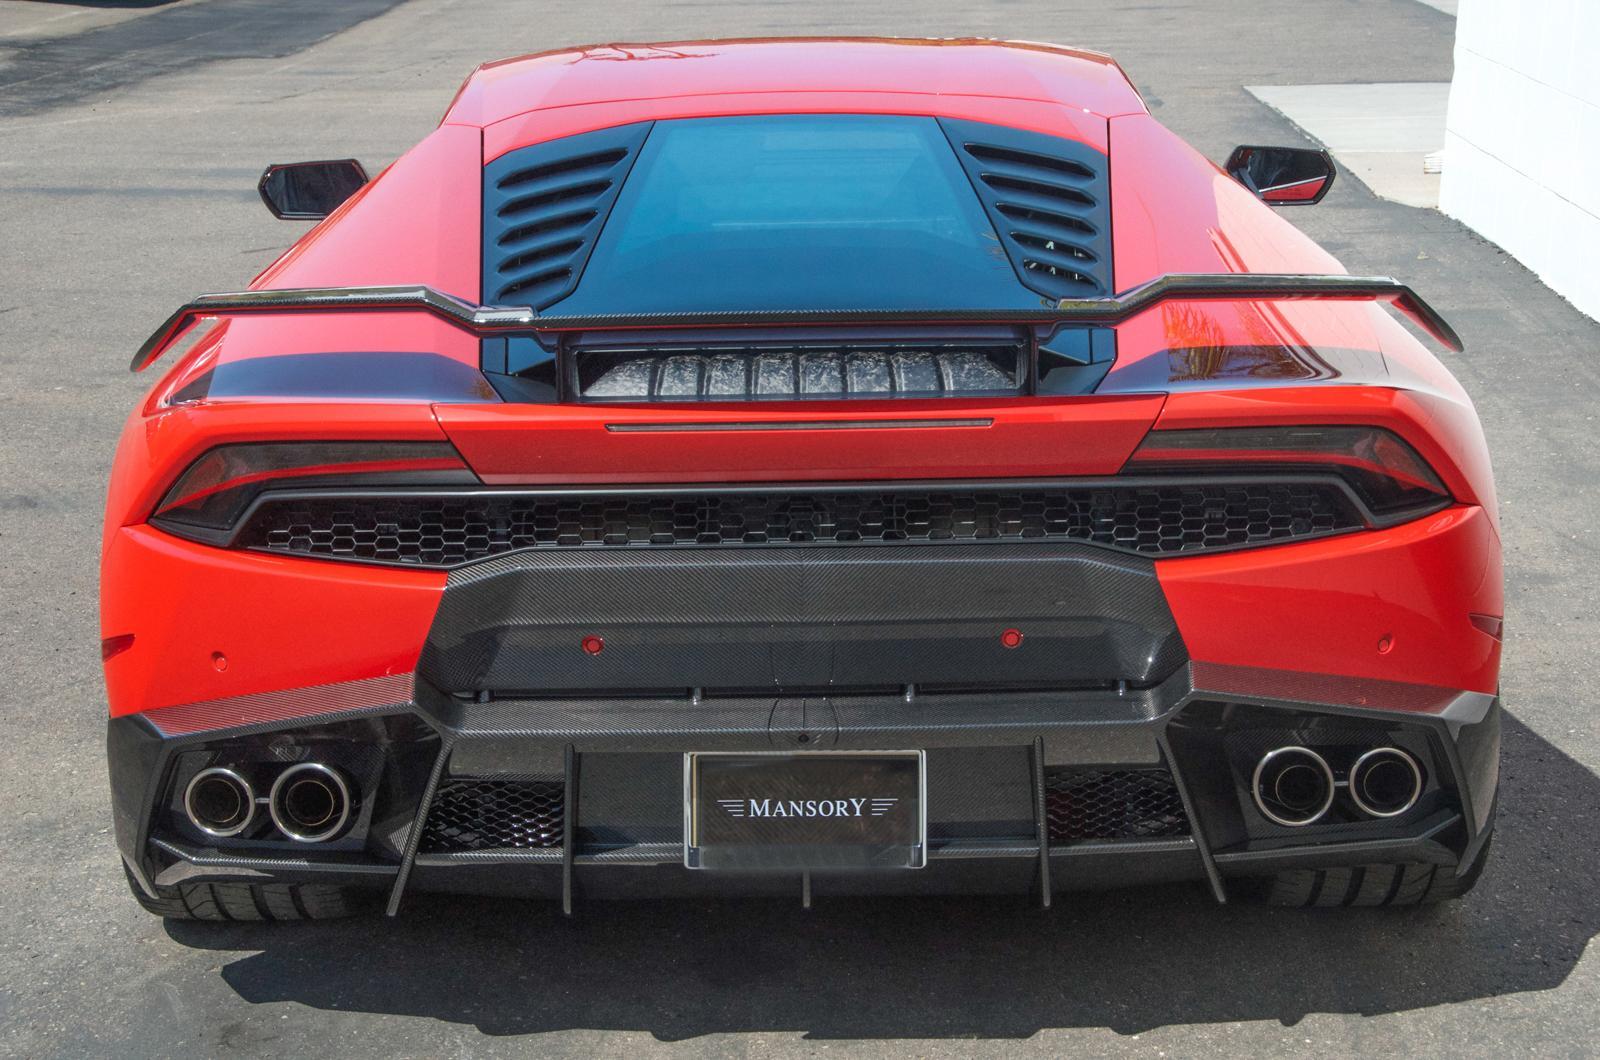 Mansory body kit for Lamborghini Huracan carbon